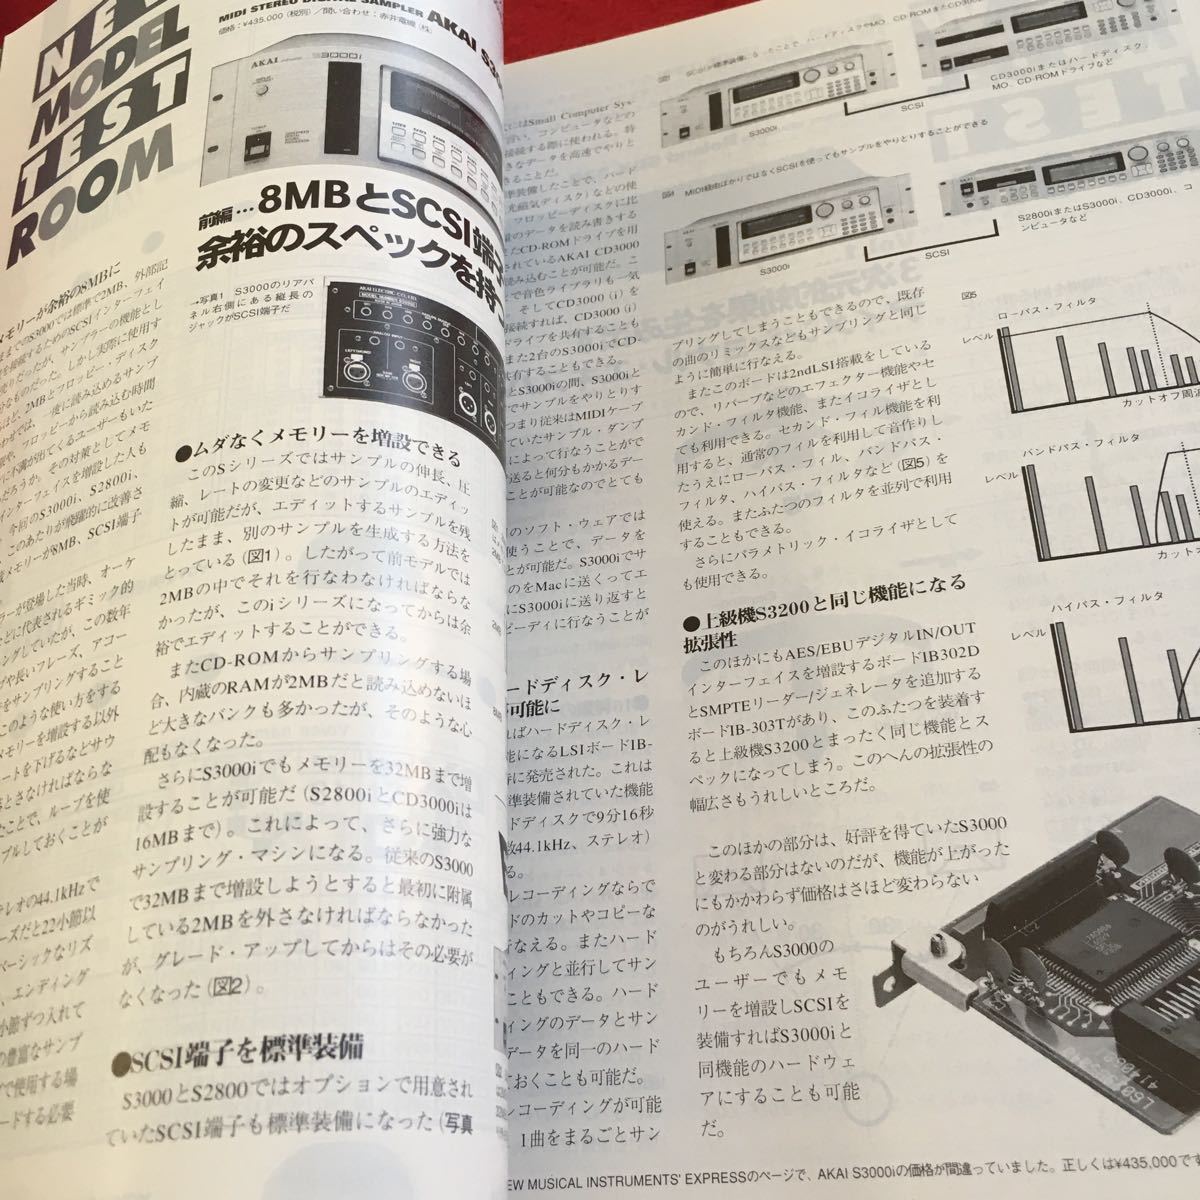 Y38-304 клавиатура специальный 1994 год выпуск 6 месяц номер специальный выпуск новейший организовать курс доступ толщина видеть .. Sakamoto Ryuichi направление . реальный Harada Shinji и т.п. . восток фирма 